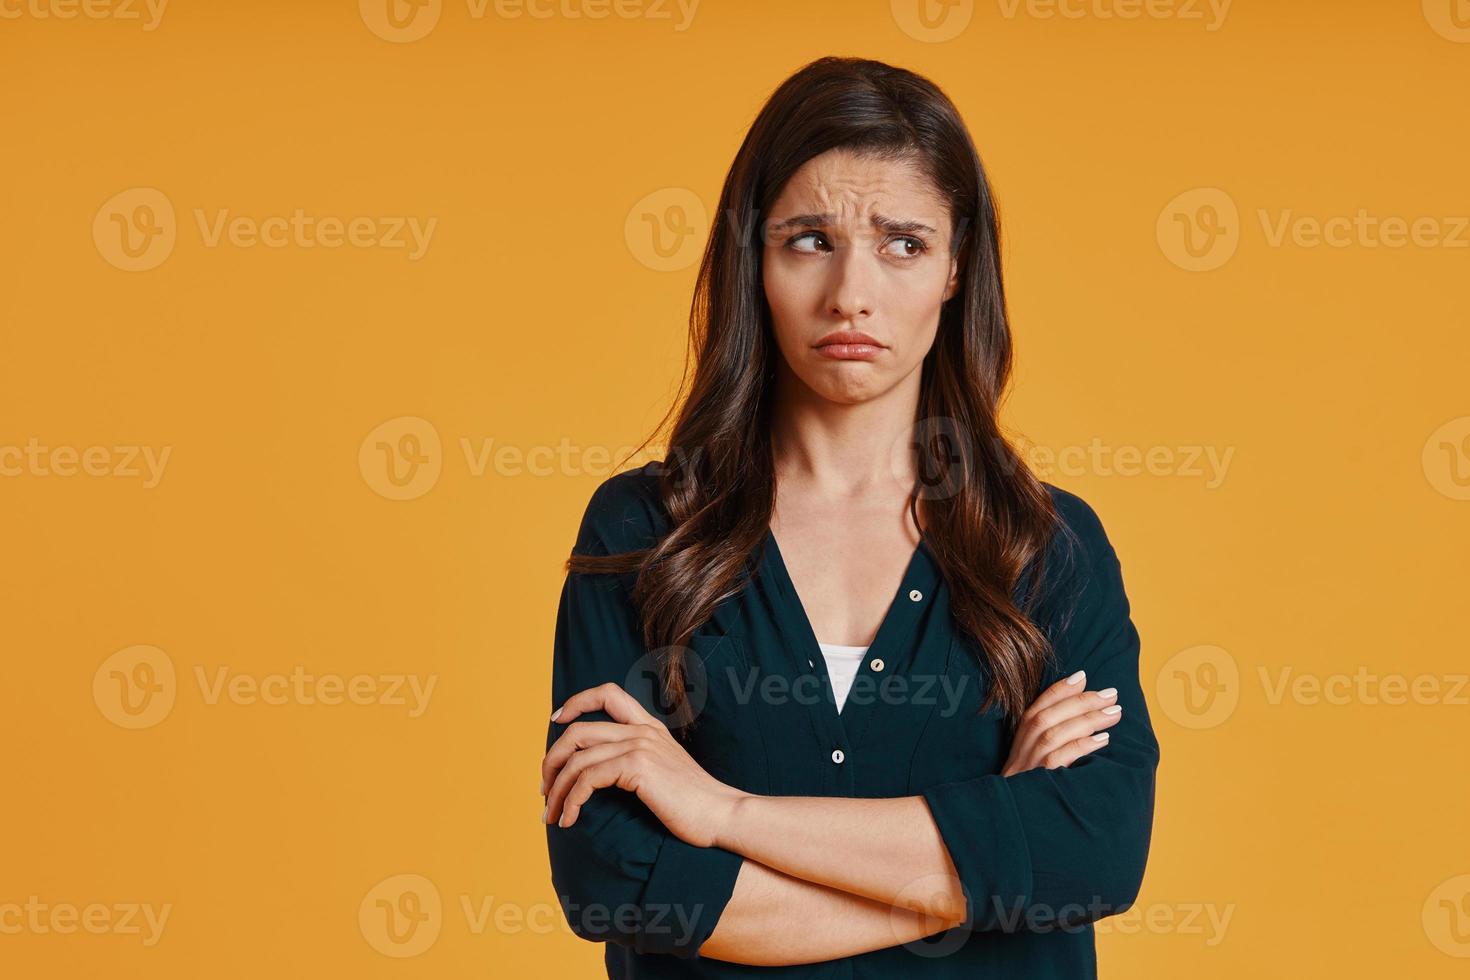 jovem triste em roupas casuais, fazendo uma careta em pé contra um fundo amarelo foto